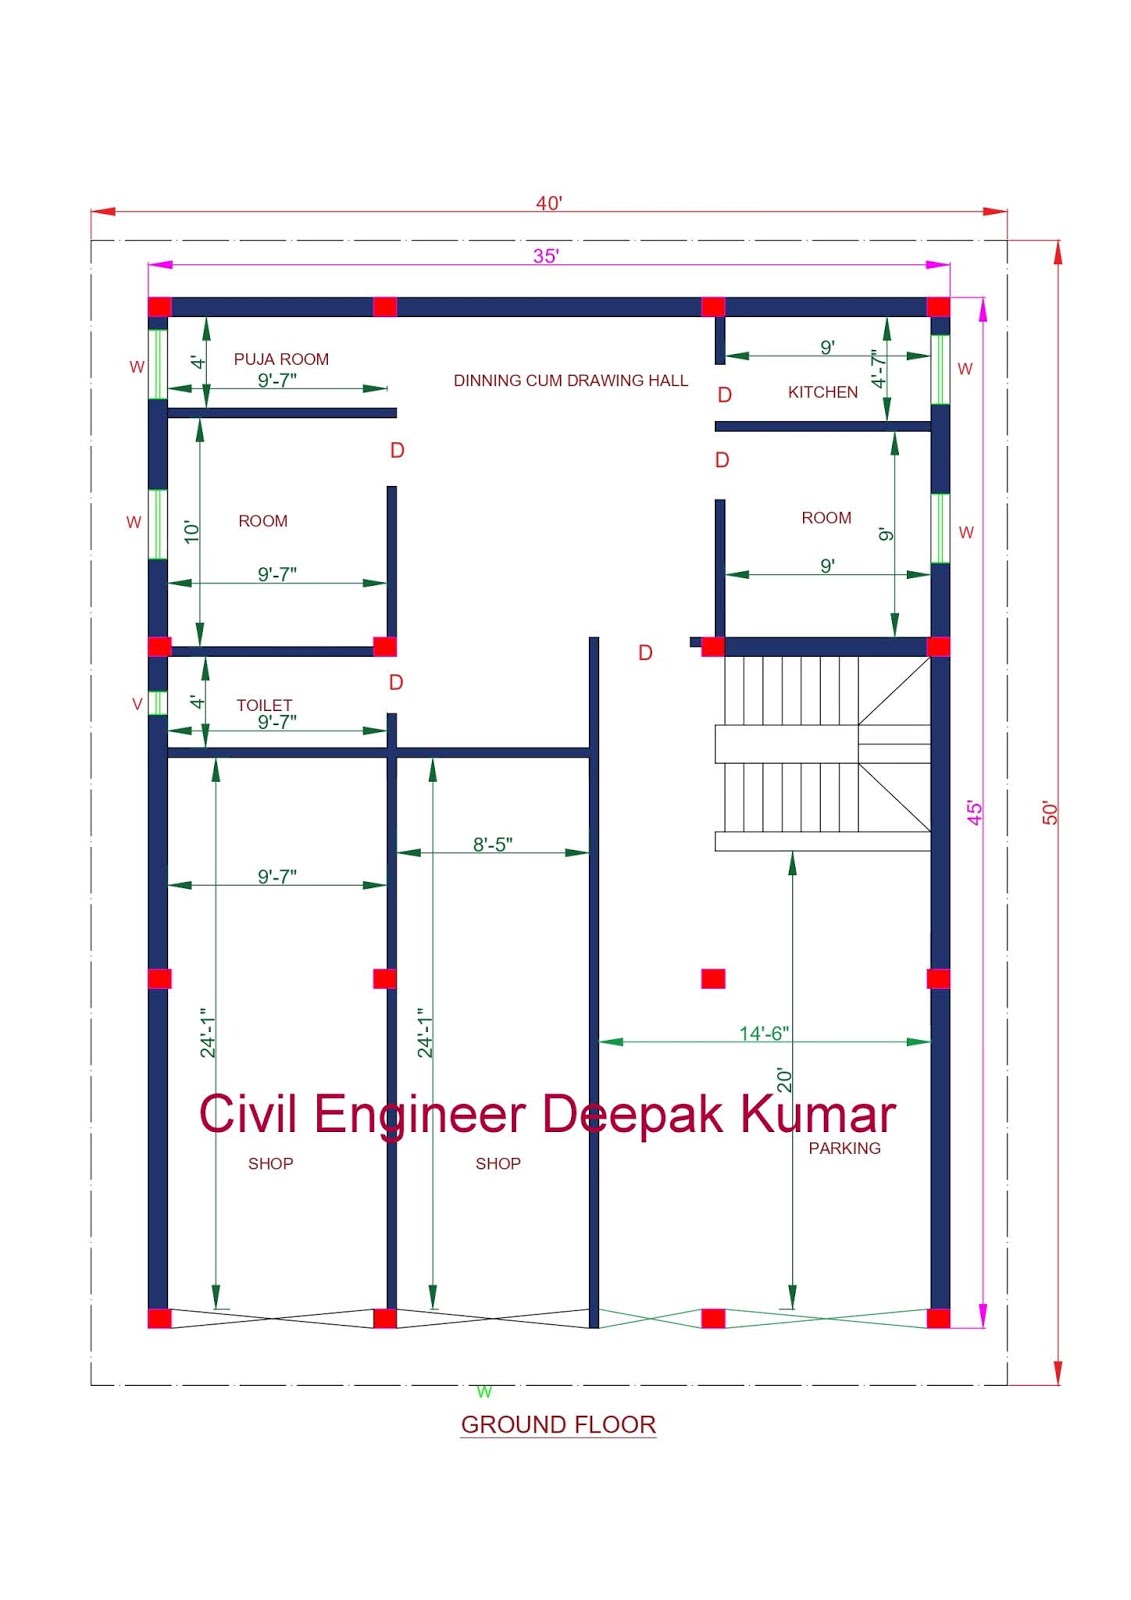 Civil Engineer Deepak Kumar 35 X 45 feet House and Shop